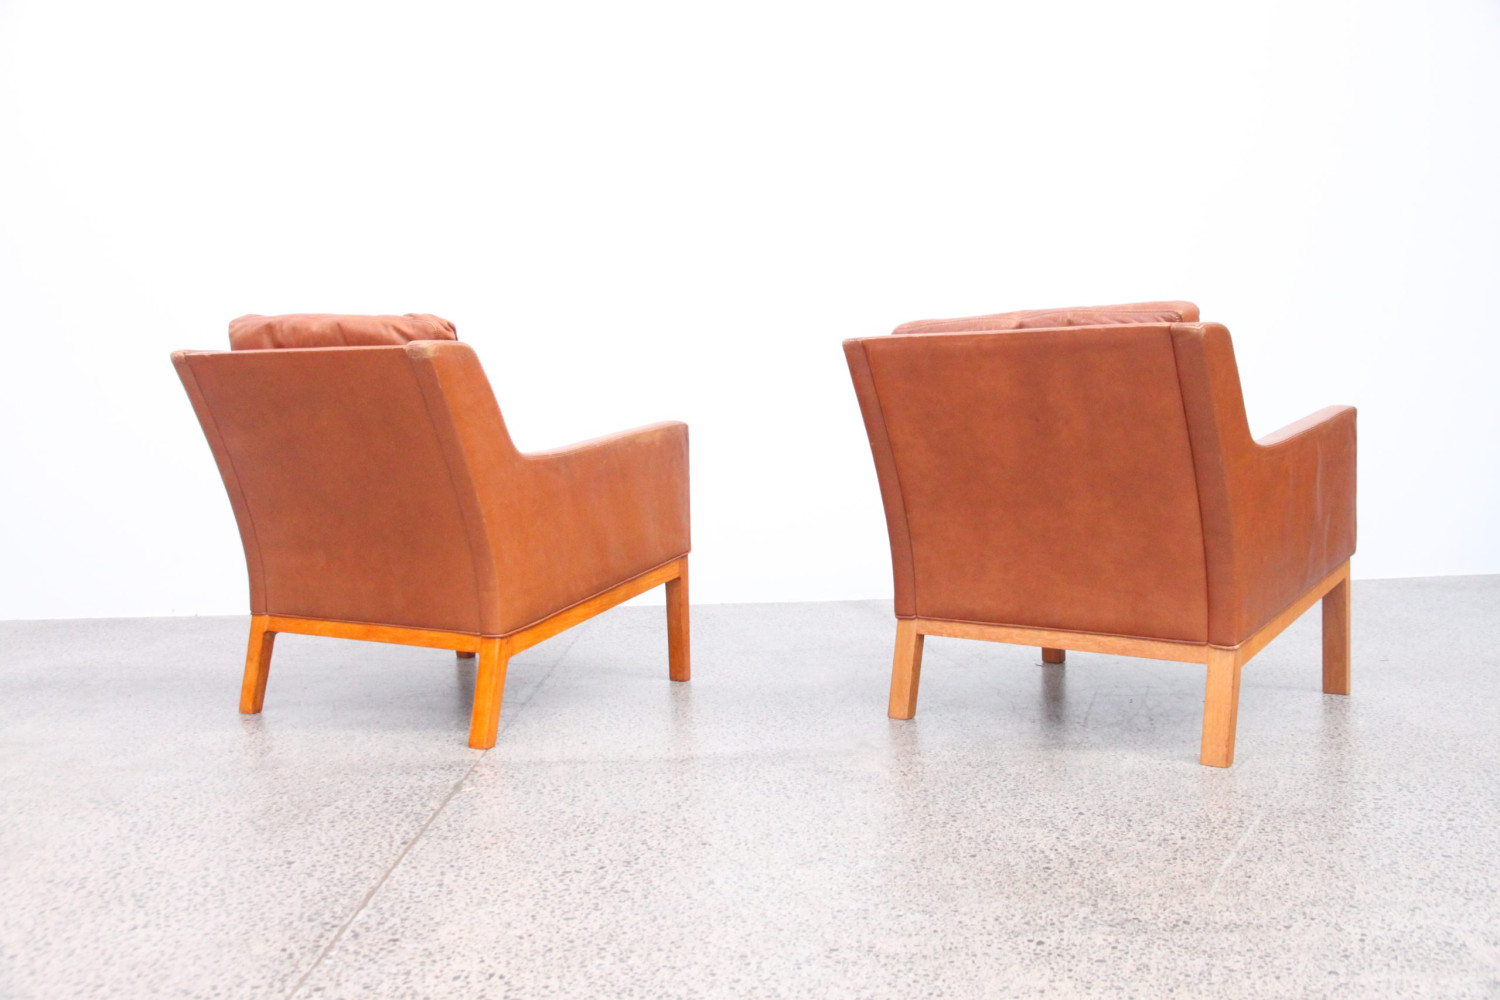 Tan Leather Sofa & Armchairs by Kai Larsen